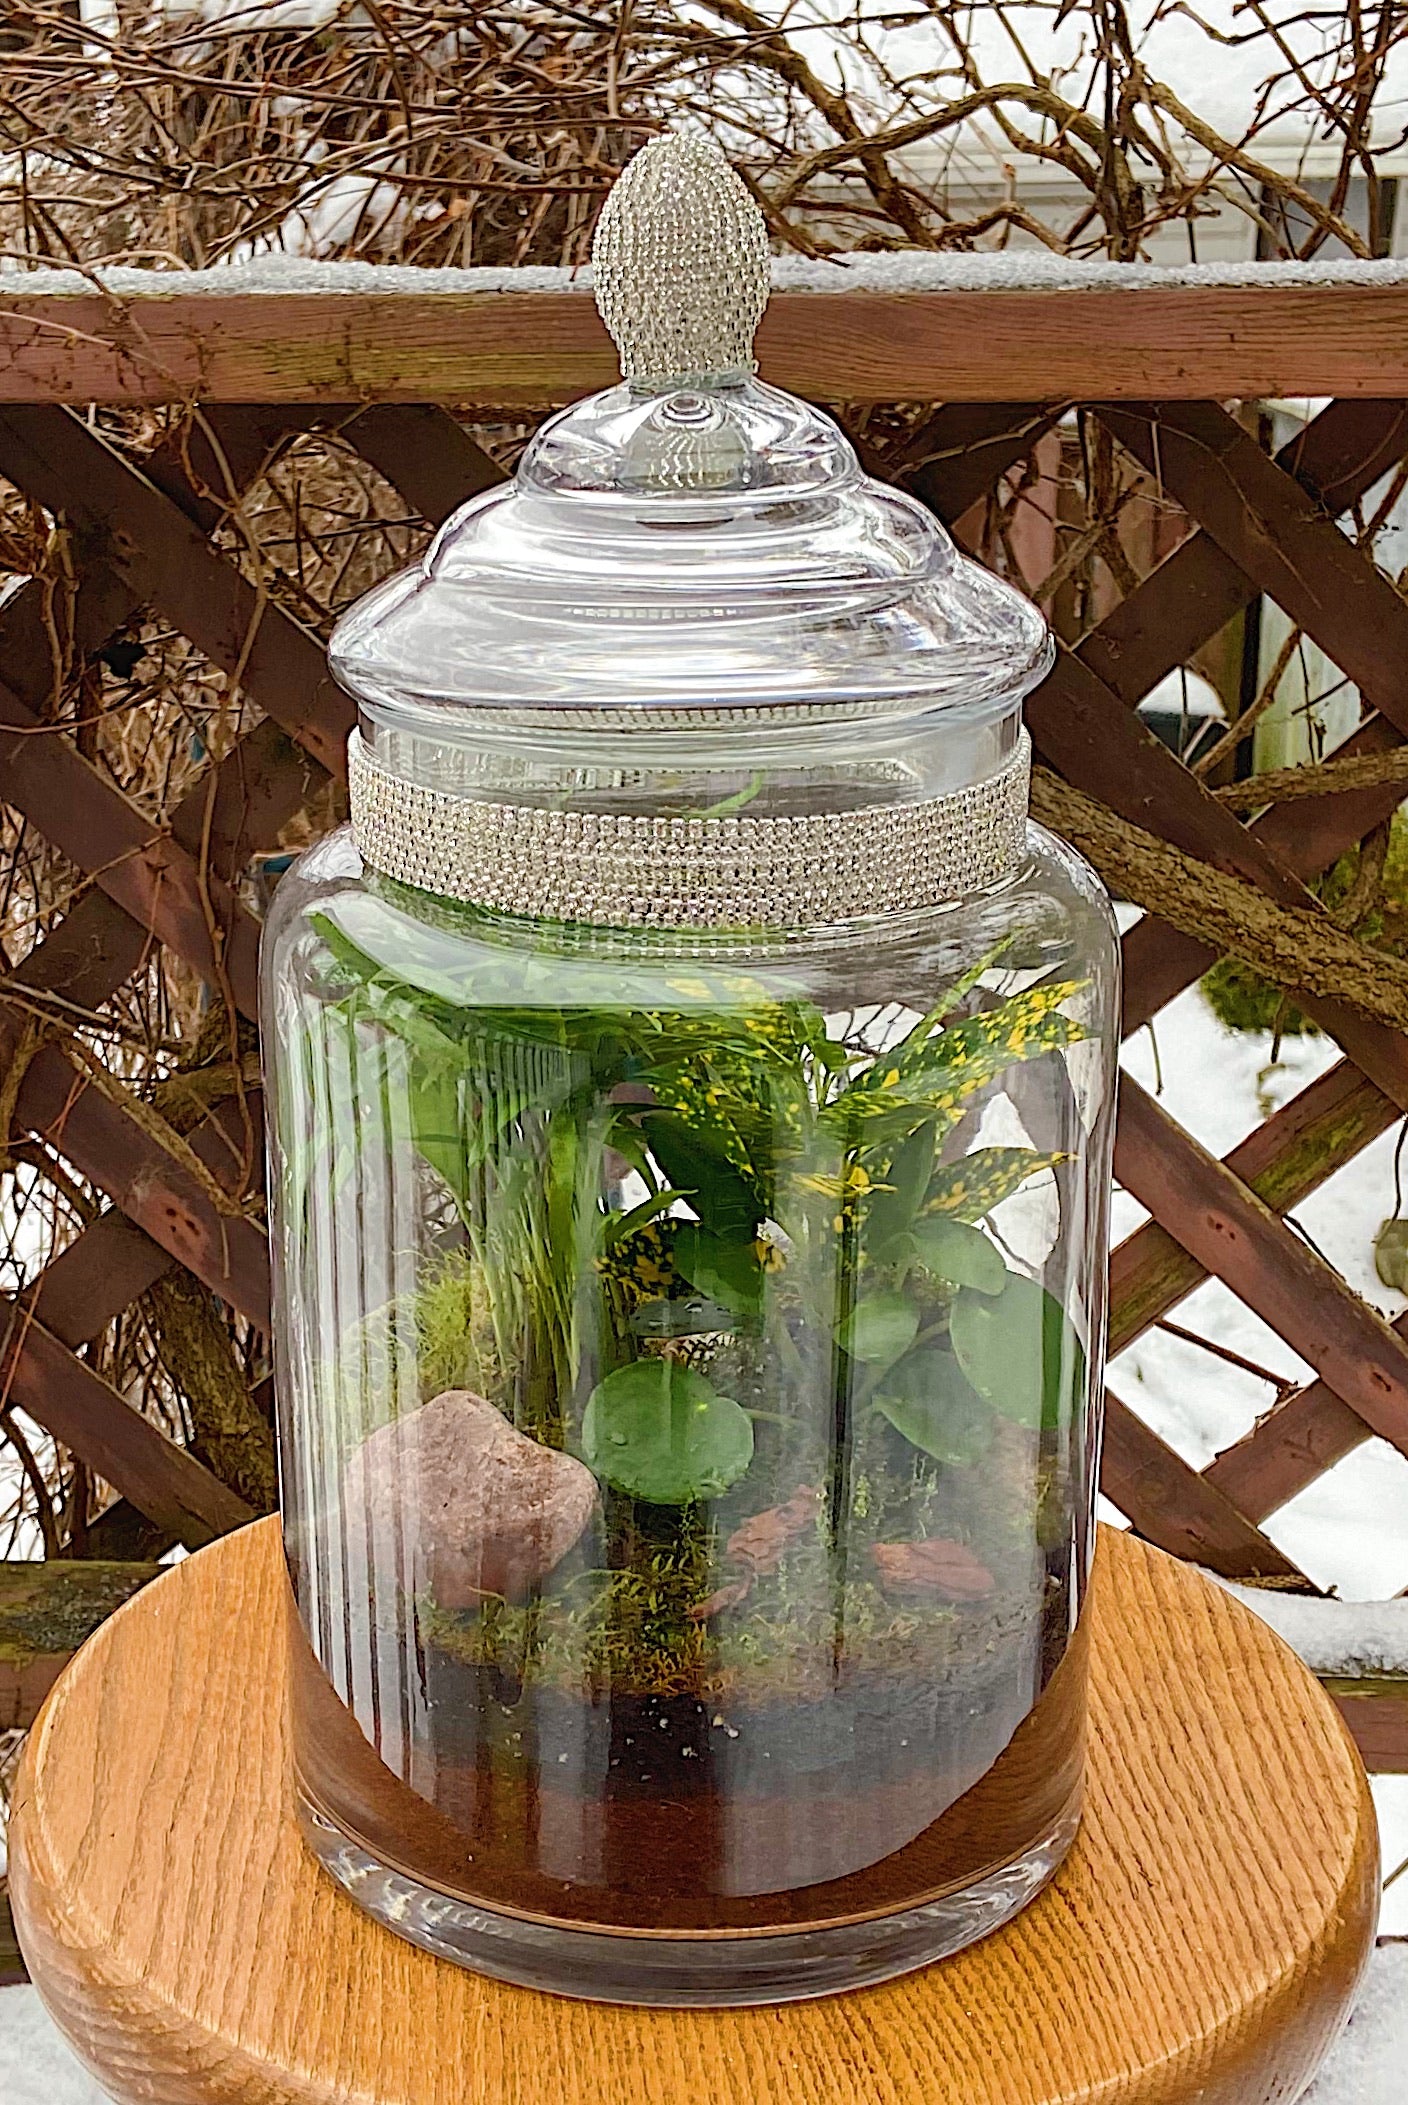 Rainforest in a jar